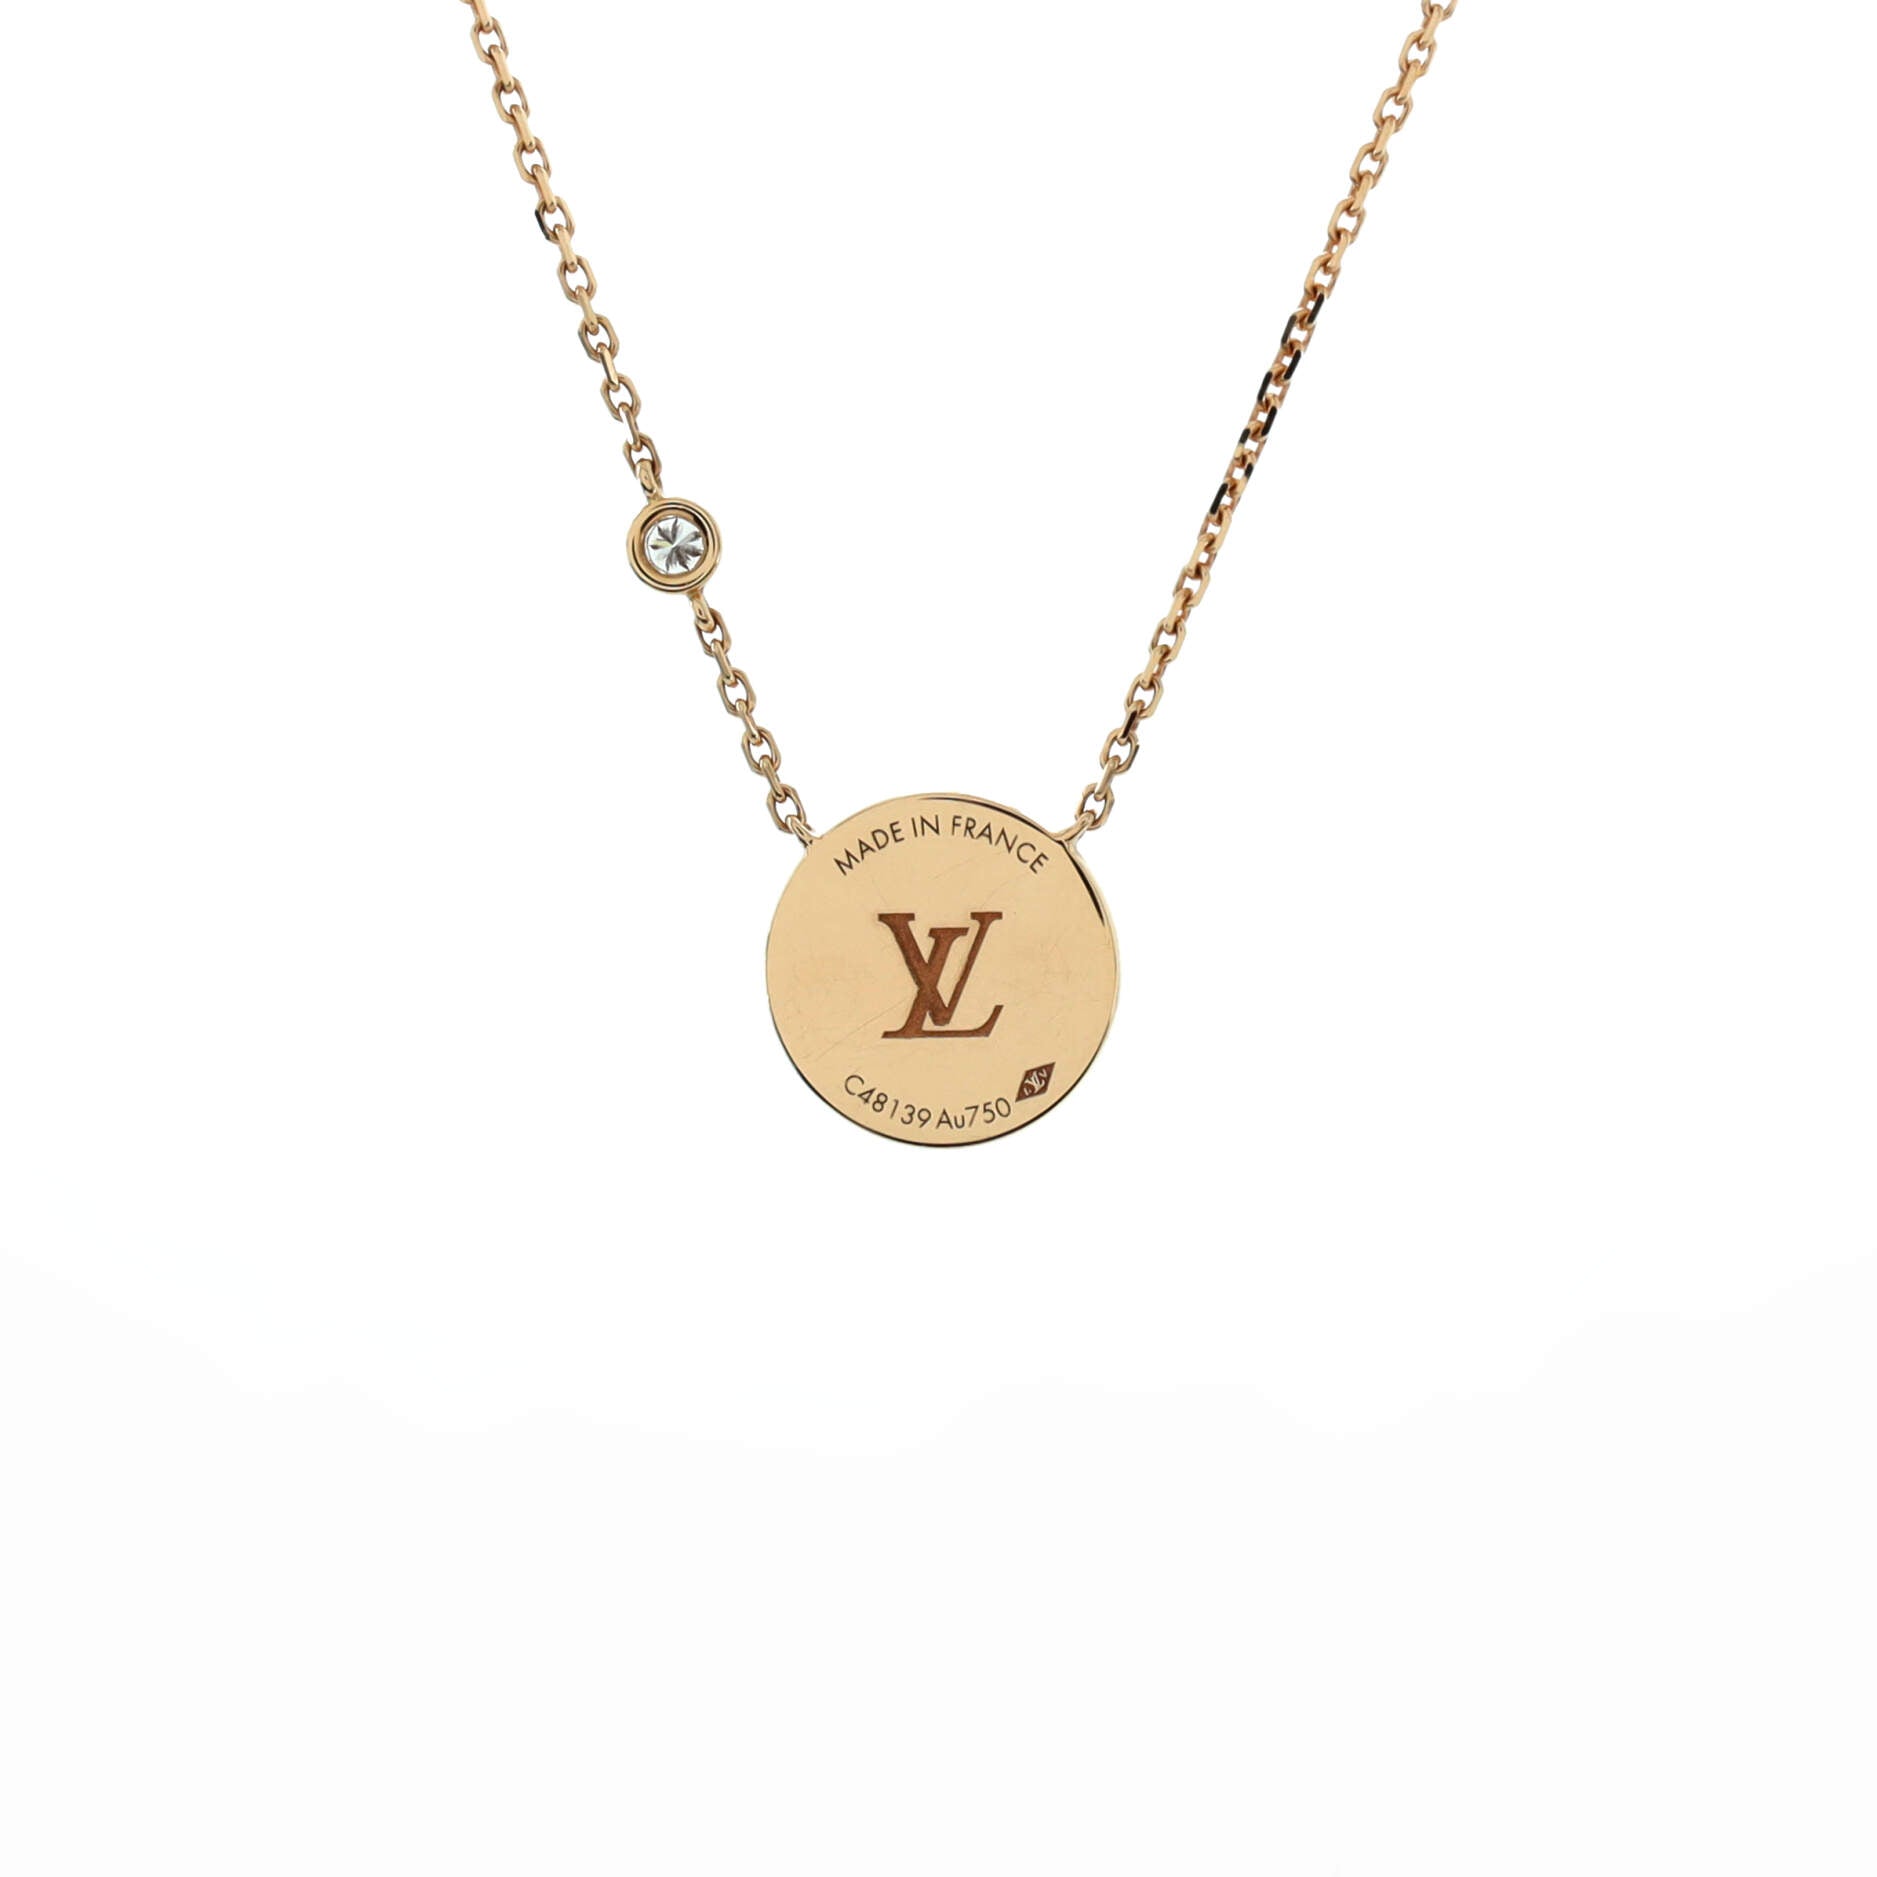 Louis Vuitton Vivienne on The Court Necklace